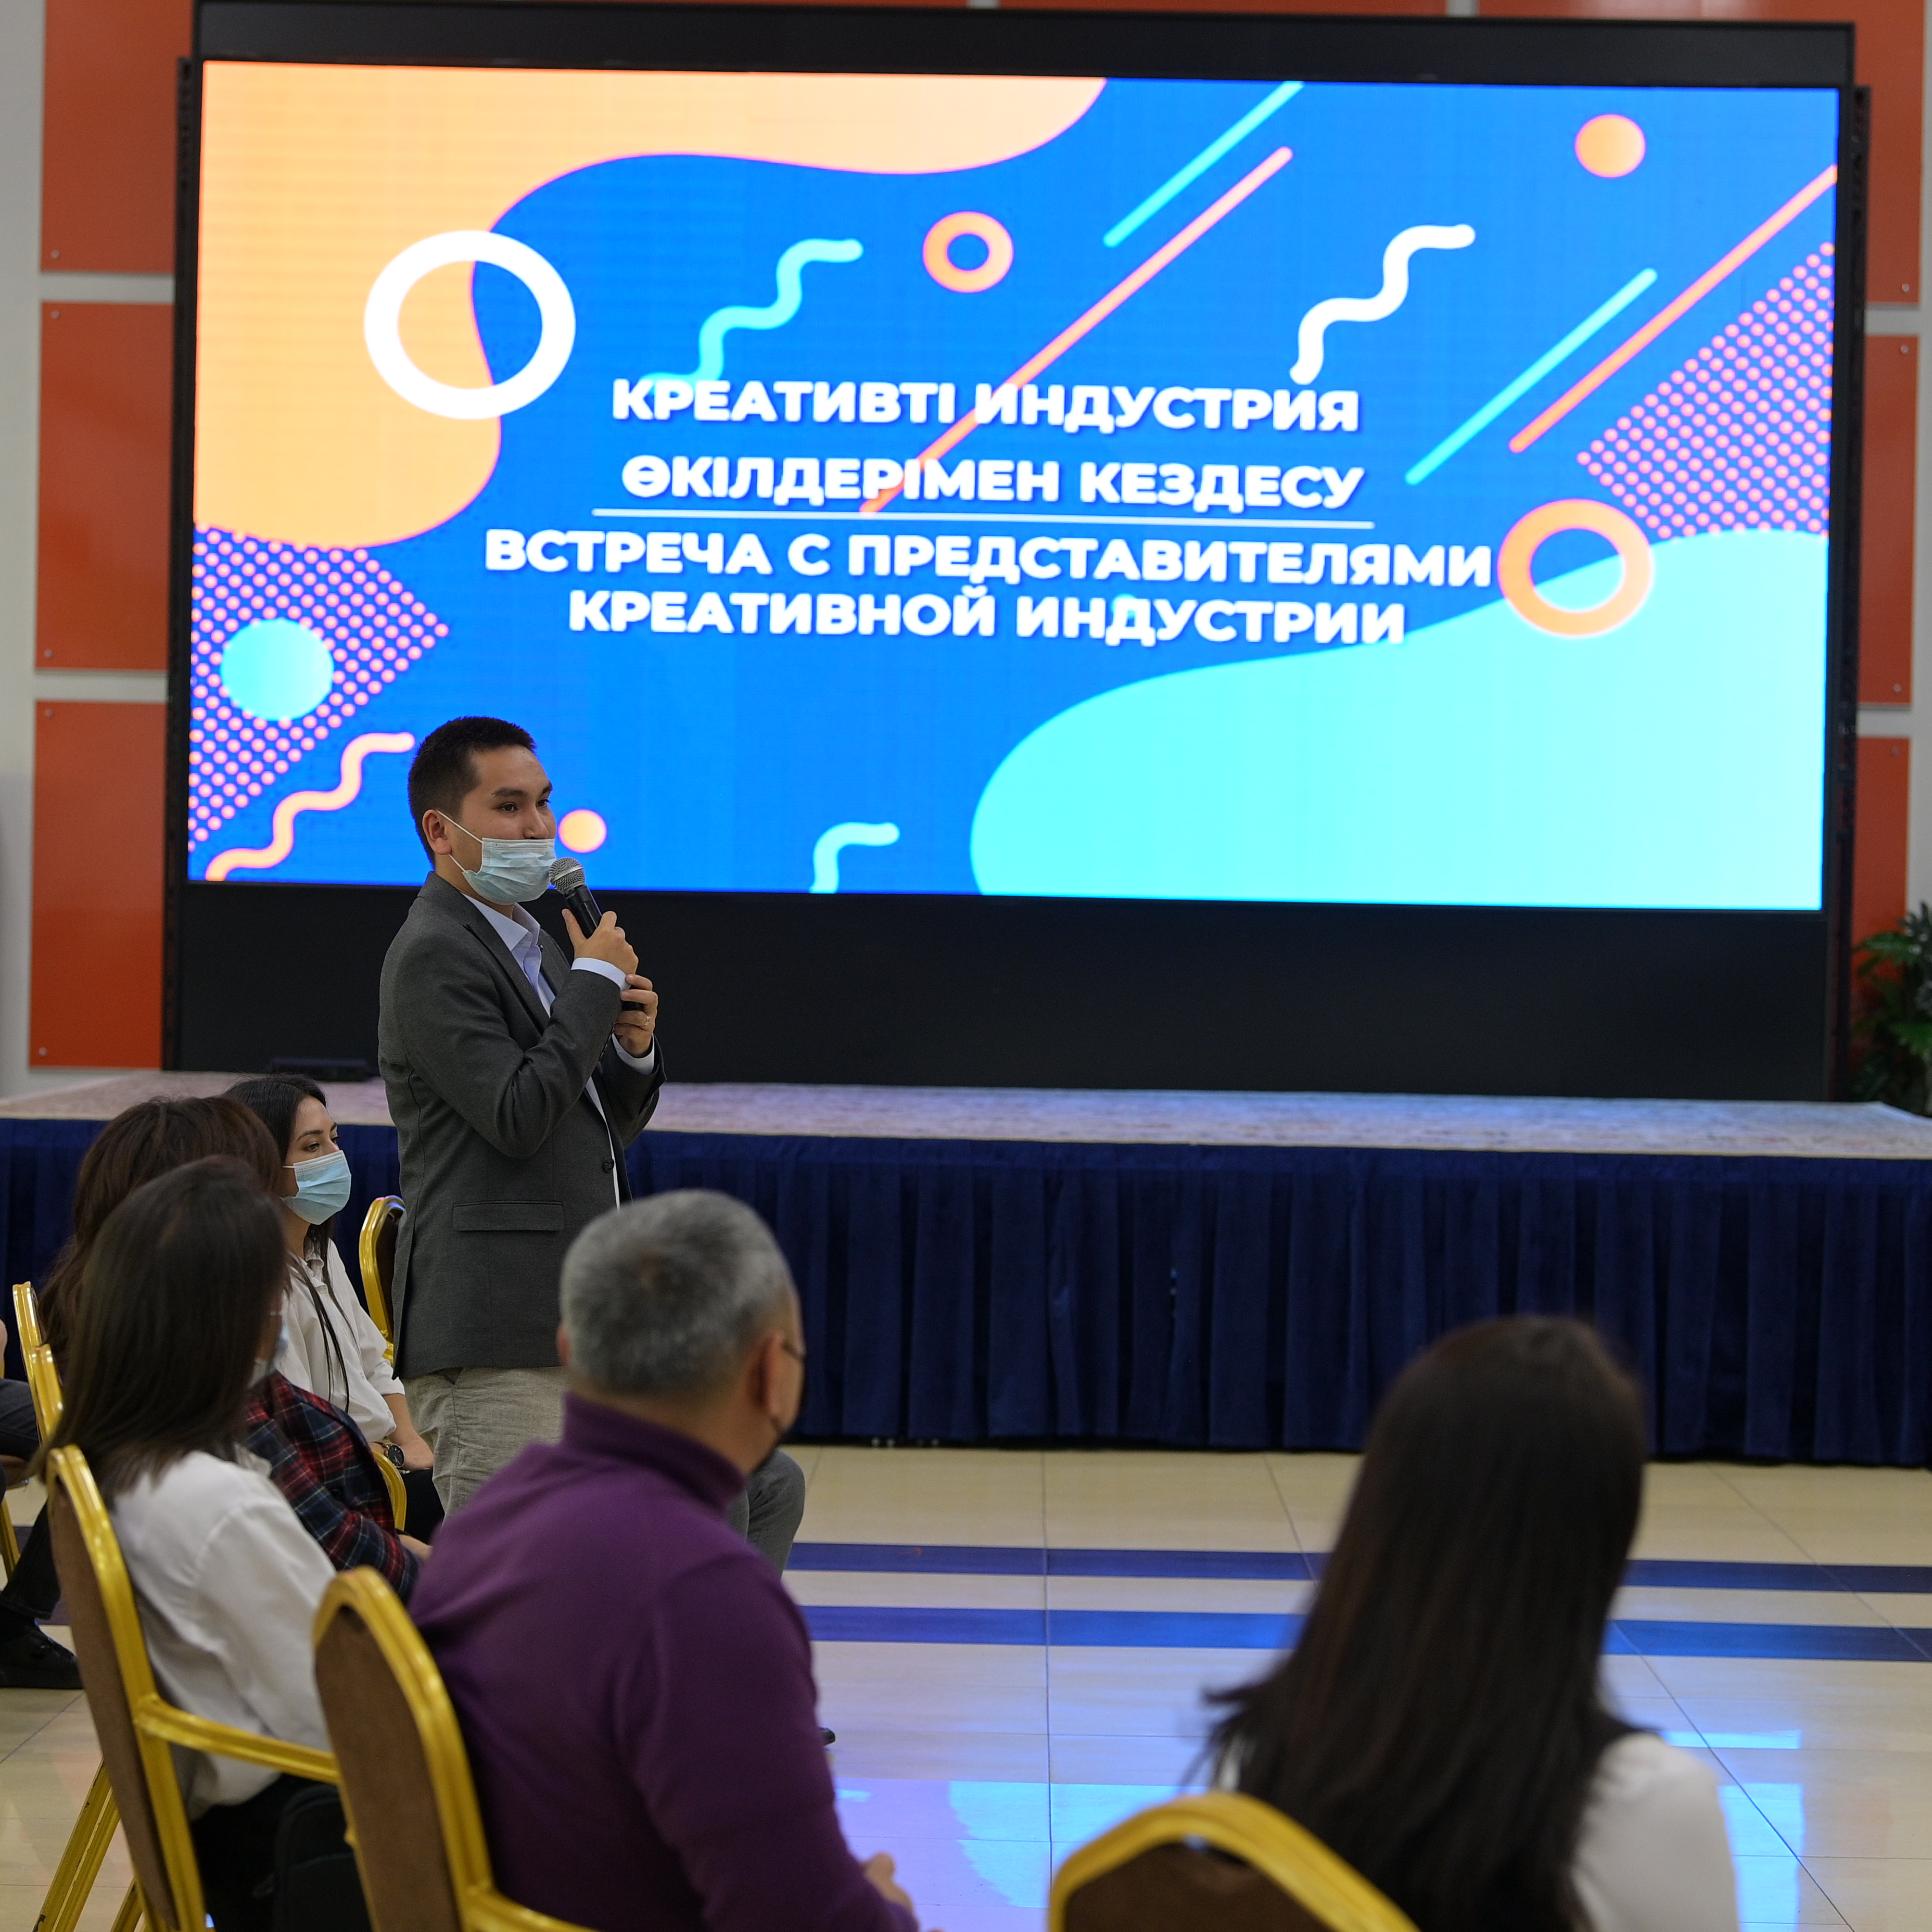 Творческий подход: Как в Павлодаре будут развивать креативную индустрию